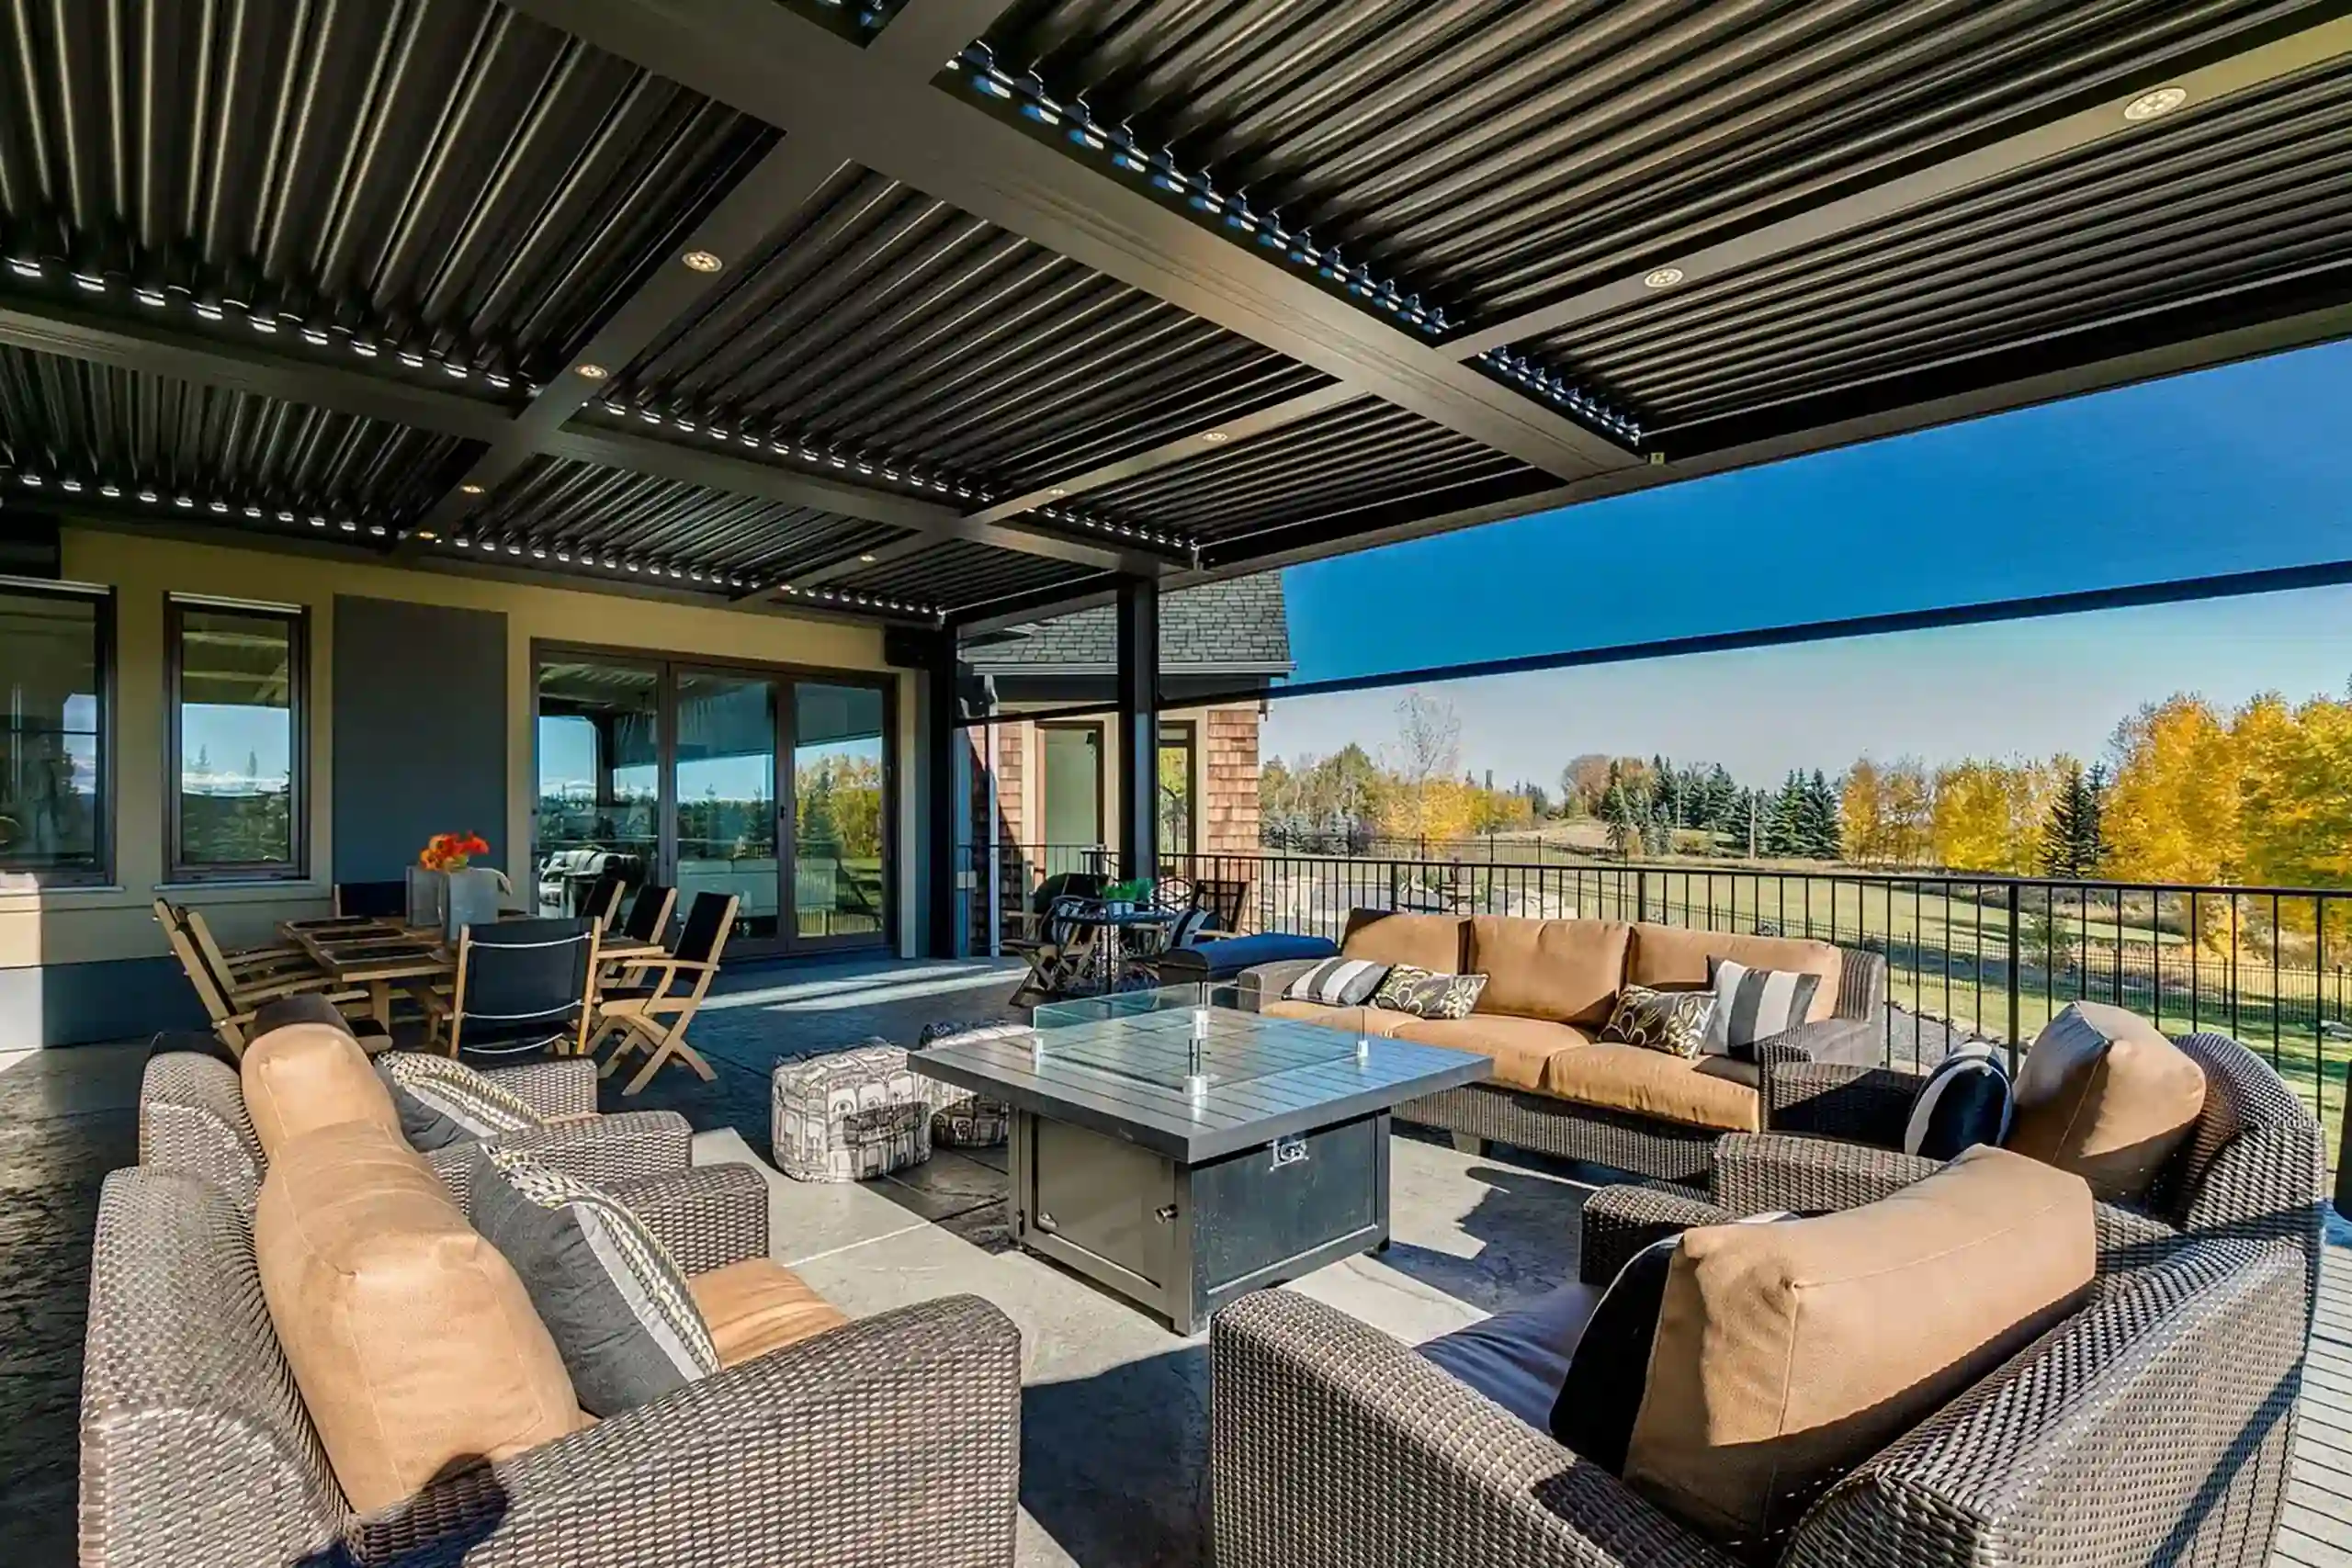 Photo of a StruXure pergola providing shade over an outdoor living room.